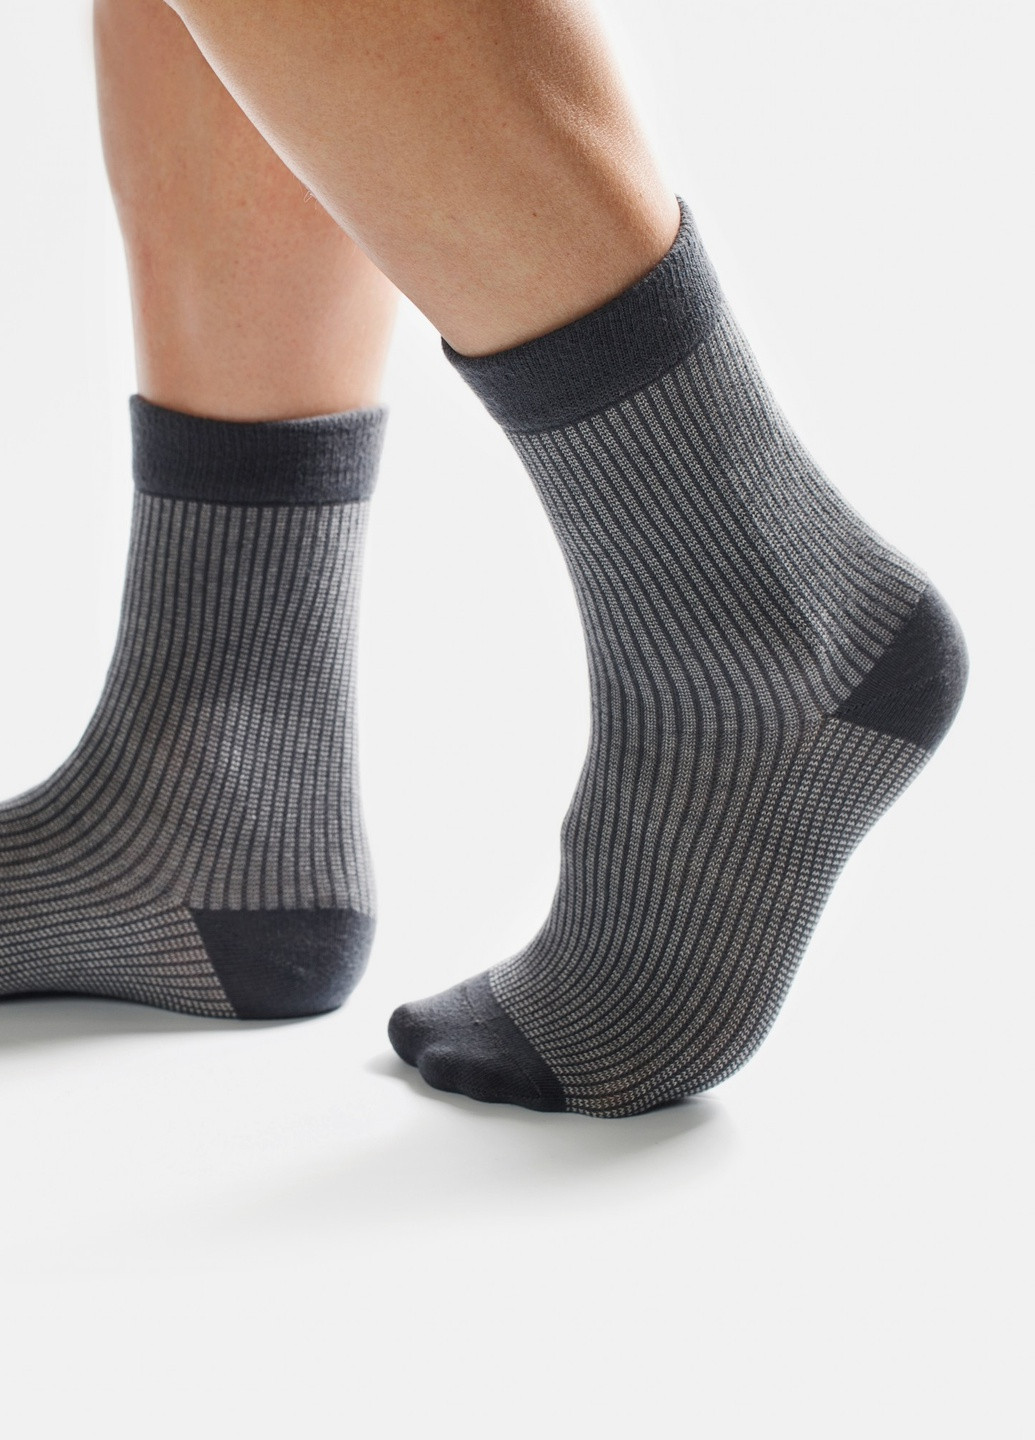 Шкарпетки з принтом кольорові смуги високі безшовні дихаючі якісні ORGANIC cotton сірі носки 42-43 men's JILL ANTONY (258630784)